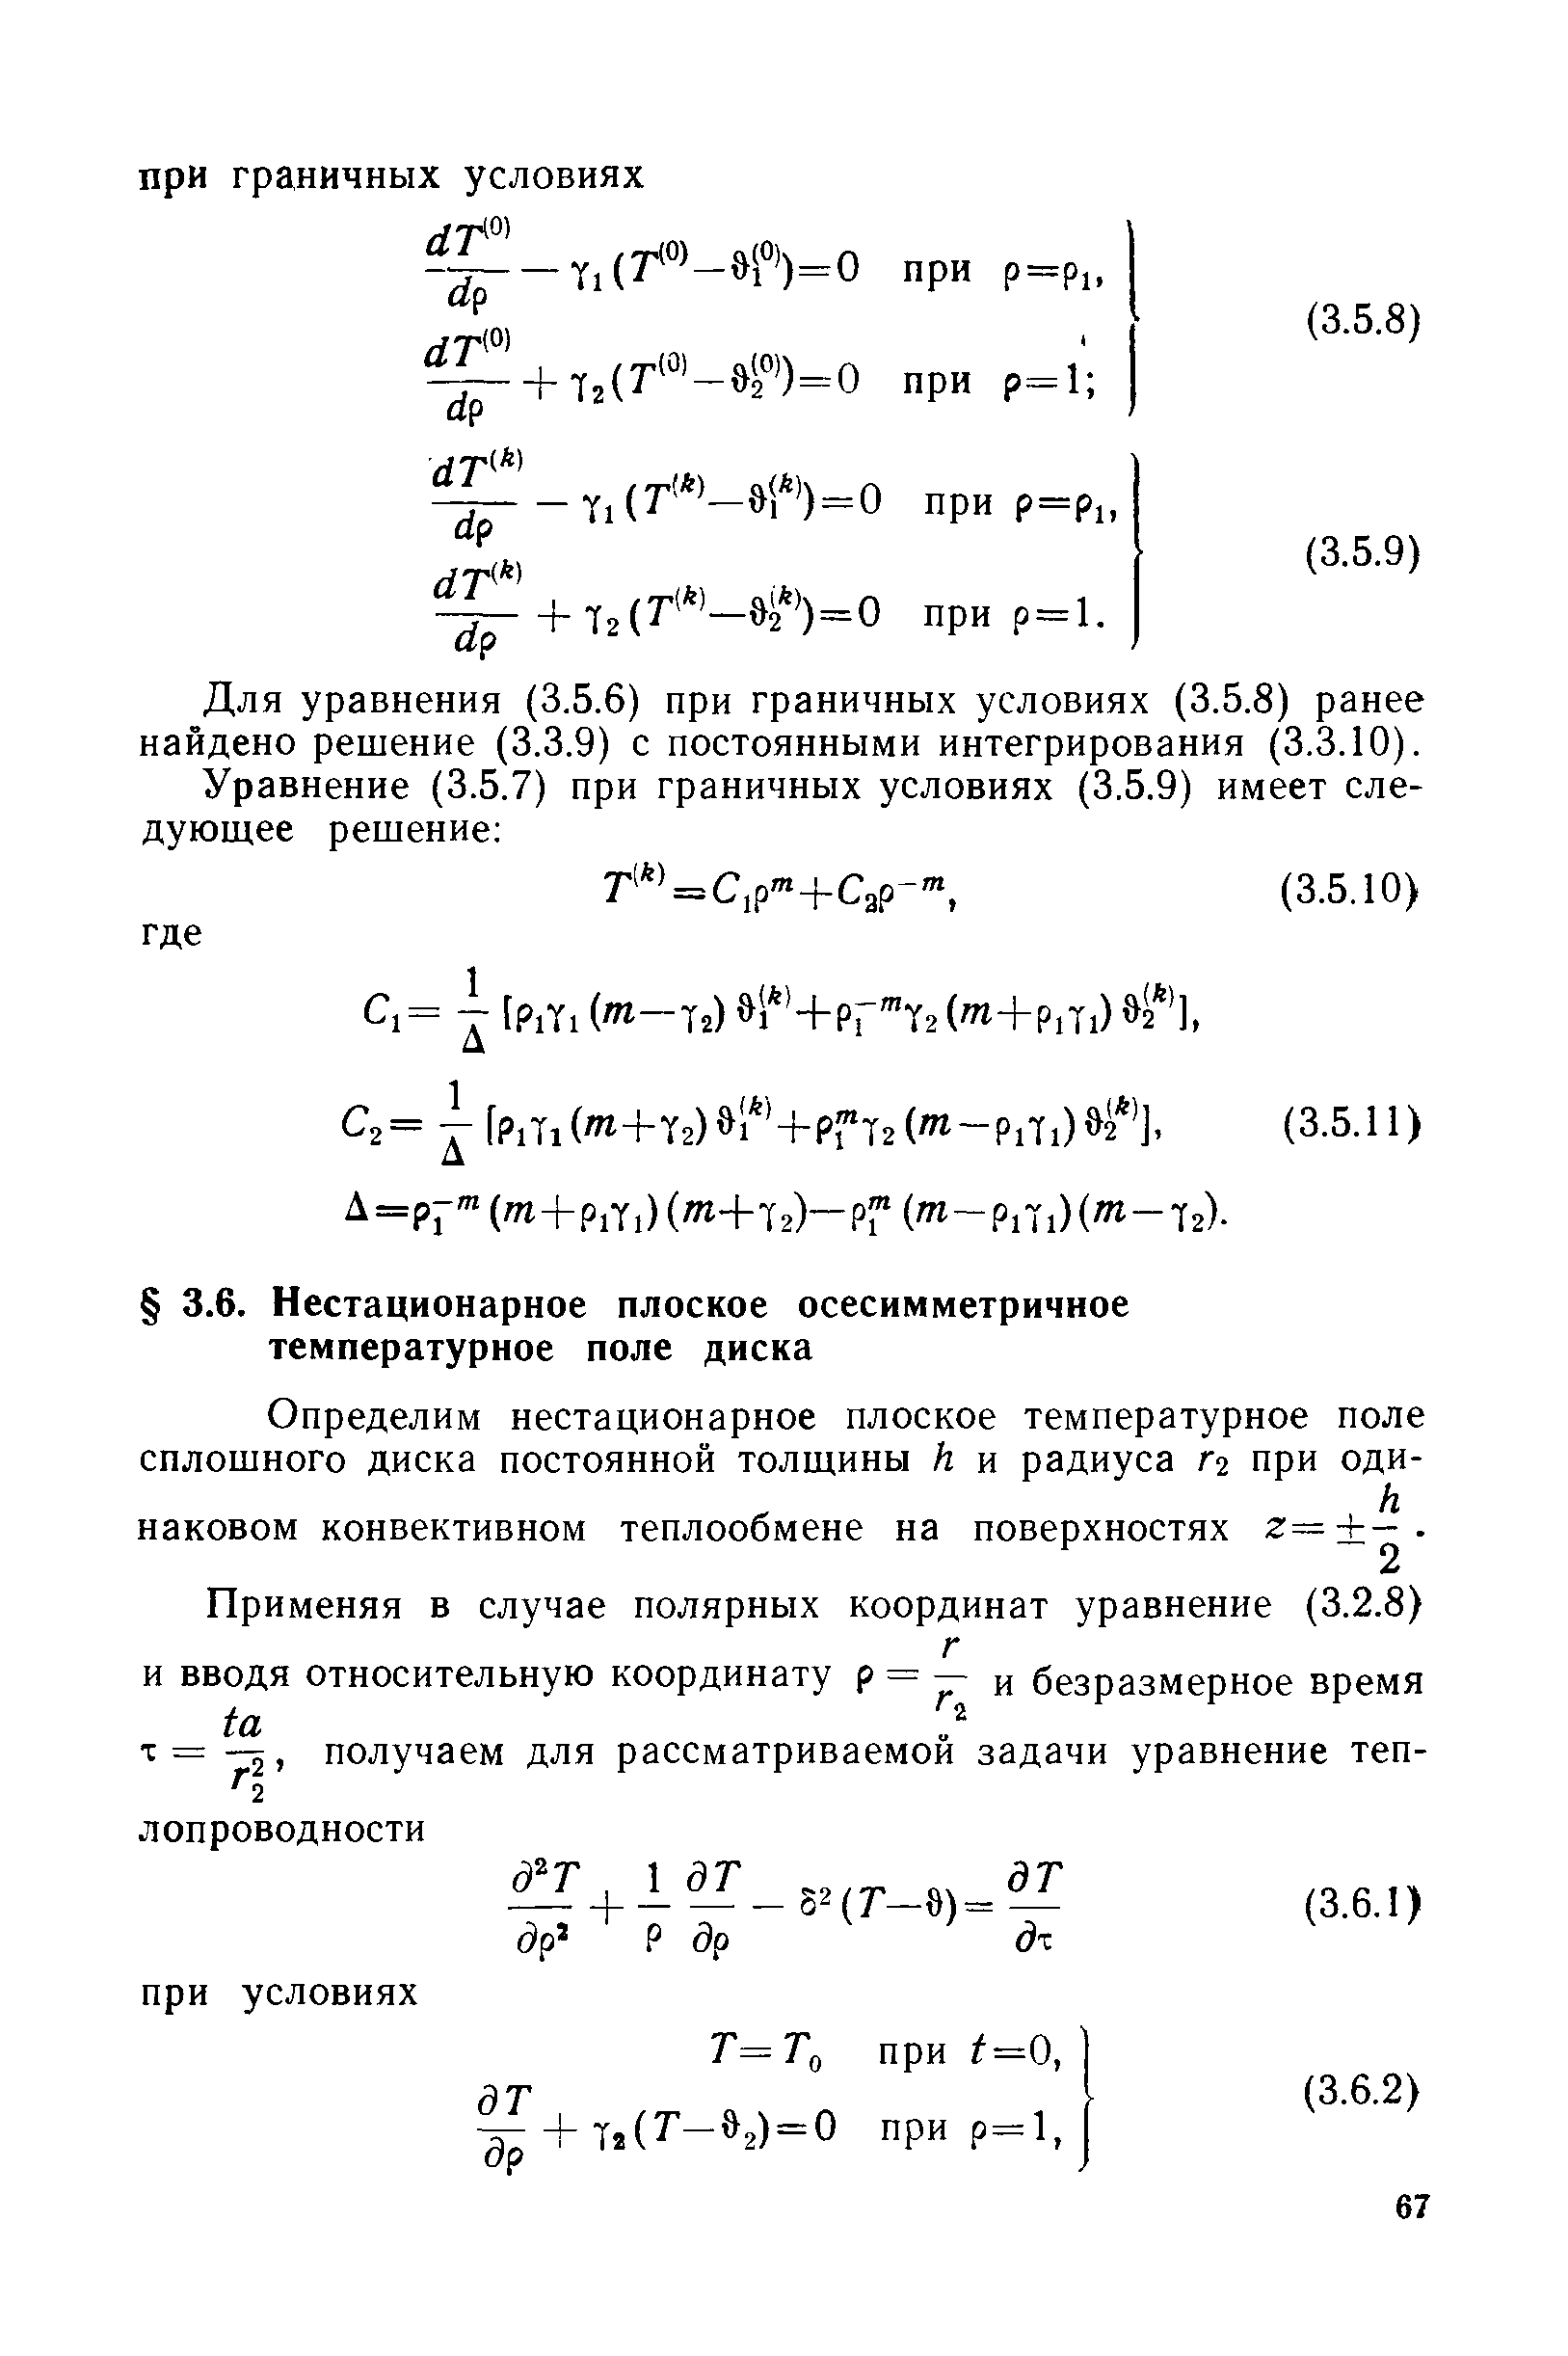 Для уравнения (3.5.6) при граничных условиях (3.5.8) ранее найдено решение (3.3.9) с постоянными интегрирования (3.3.10).
